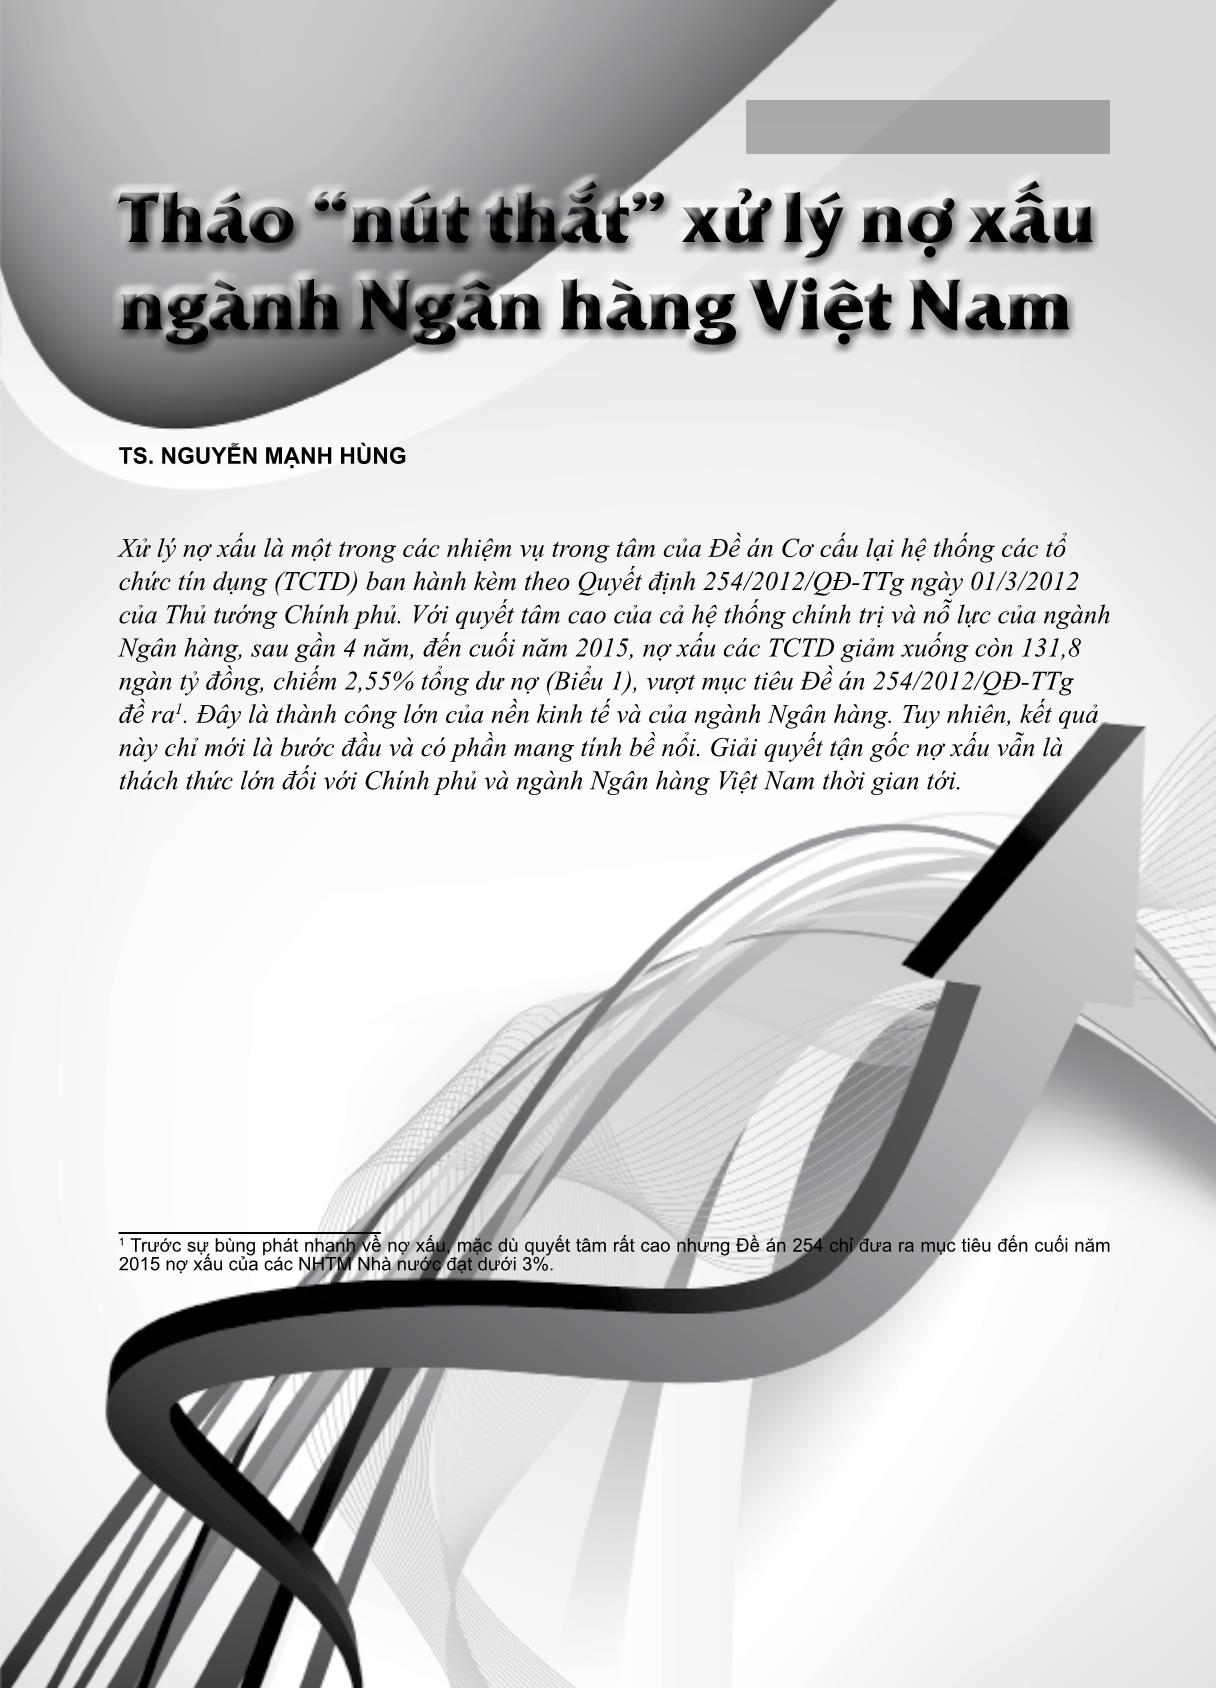 Tháo “nút thắt” xử lý nợ xấu ngành ngân hàng Việt Nam trang 1